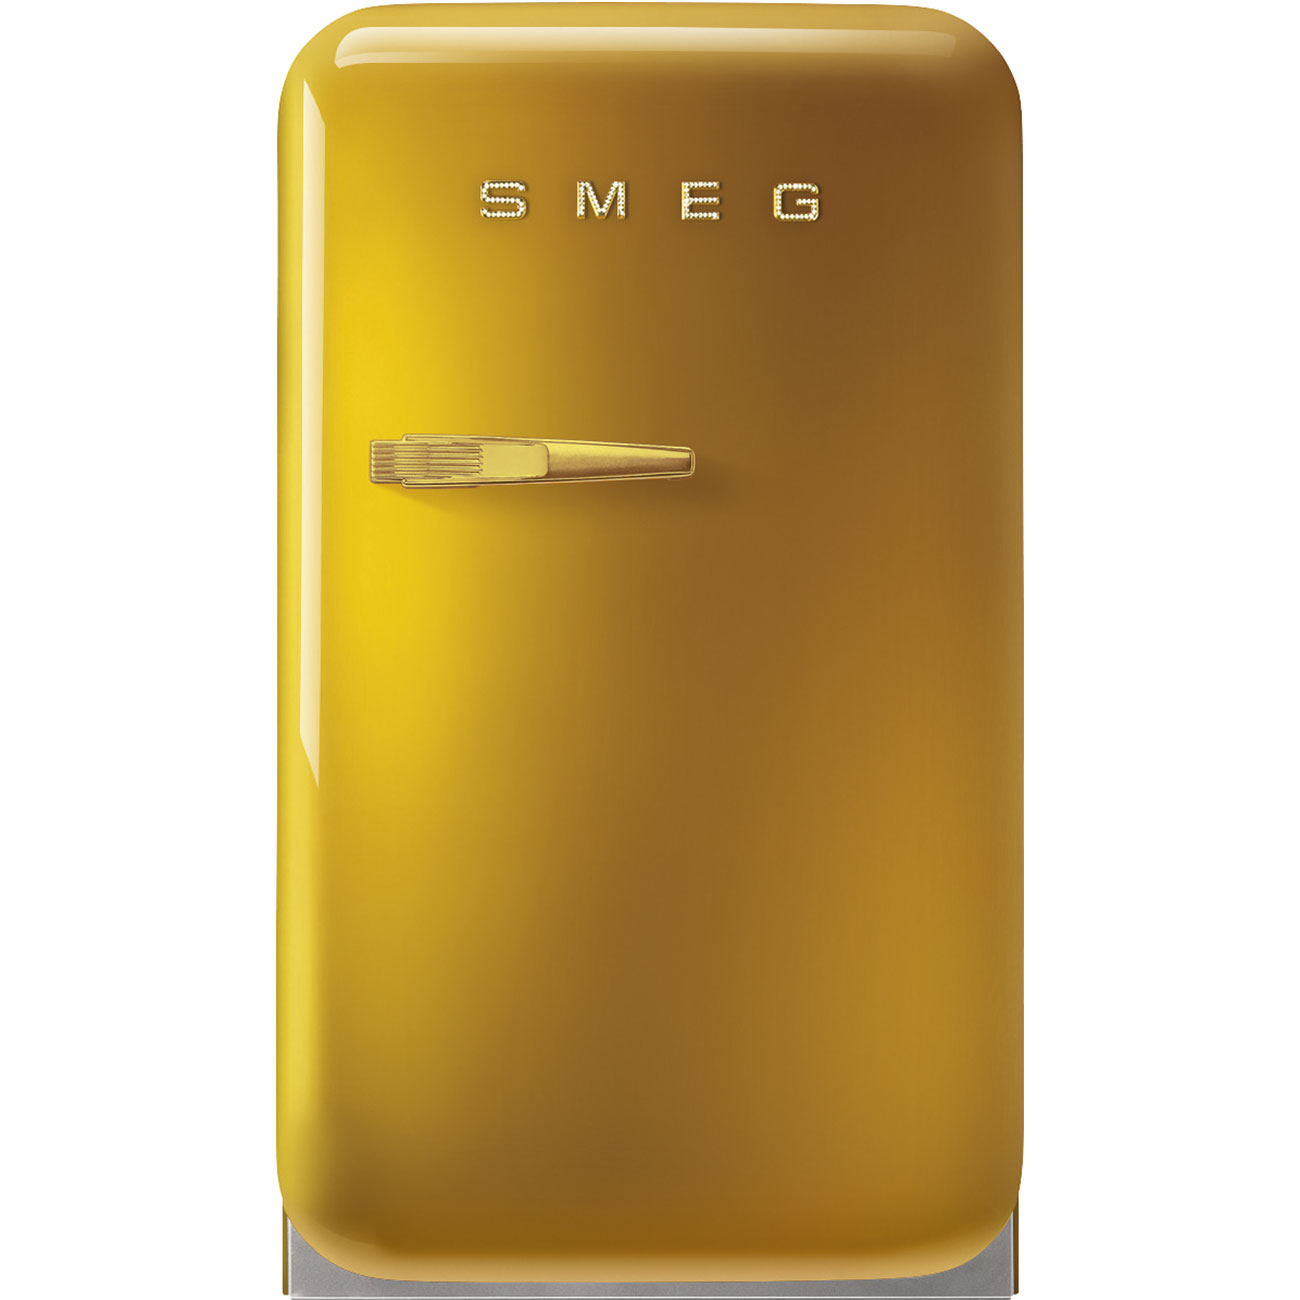 Goud koelkast - Smeg_1